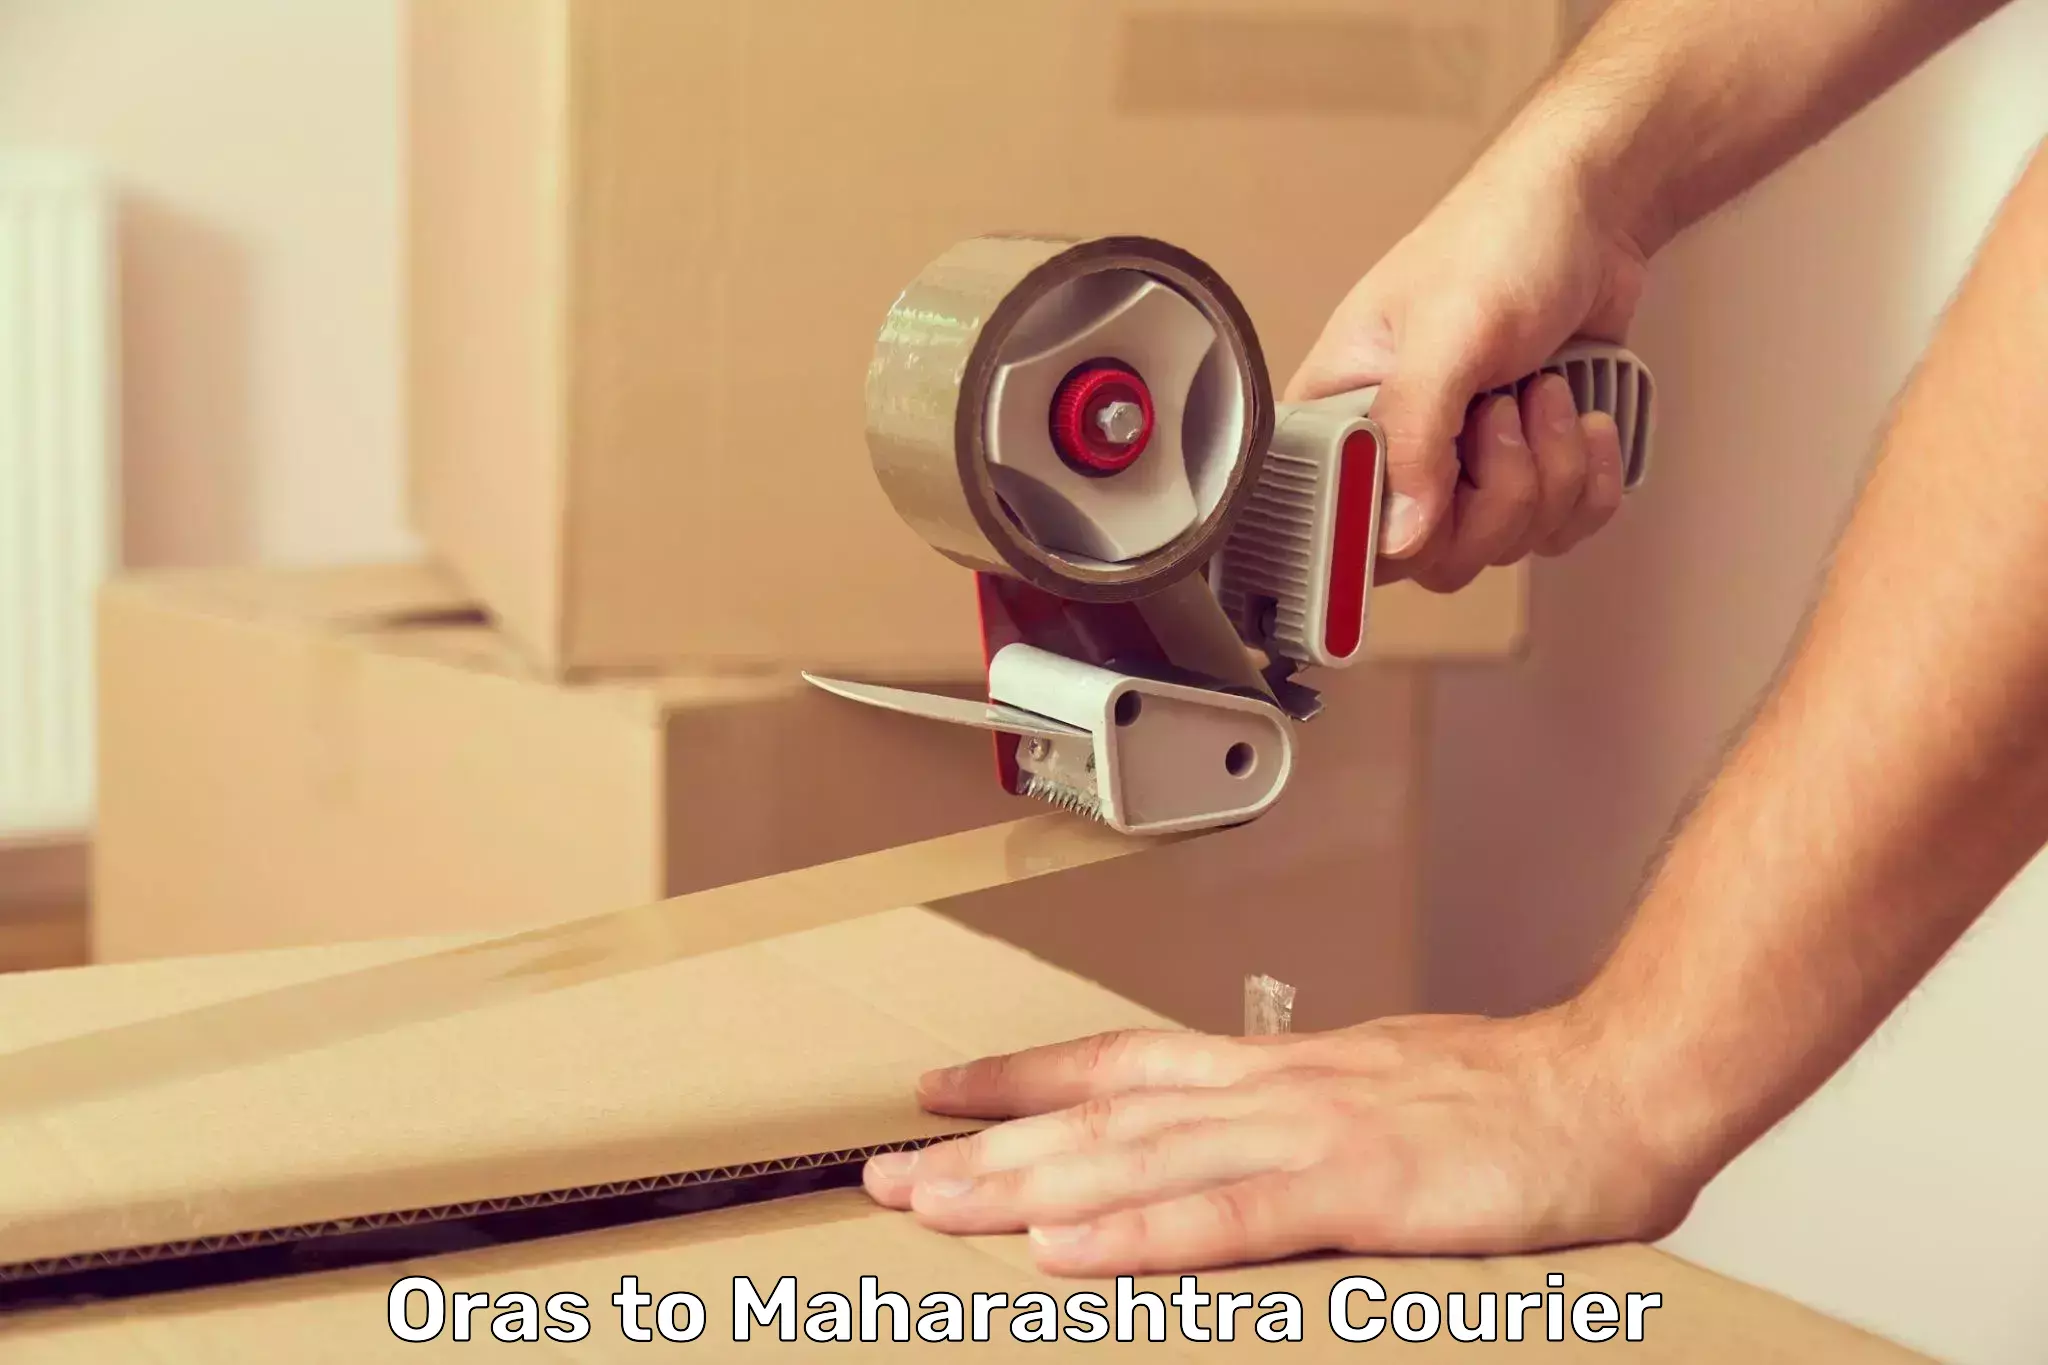 Door-to-door freight service Oras to Maharashtra